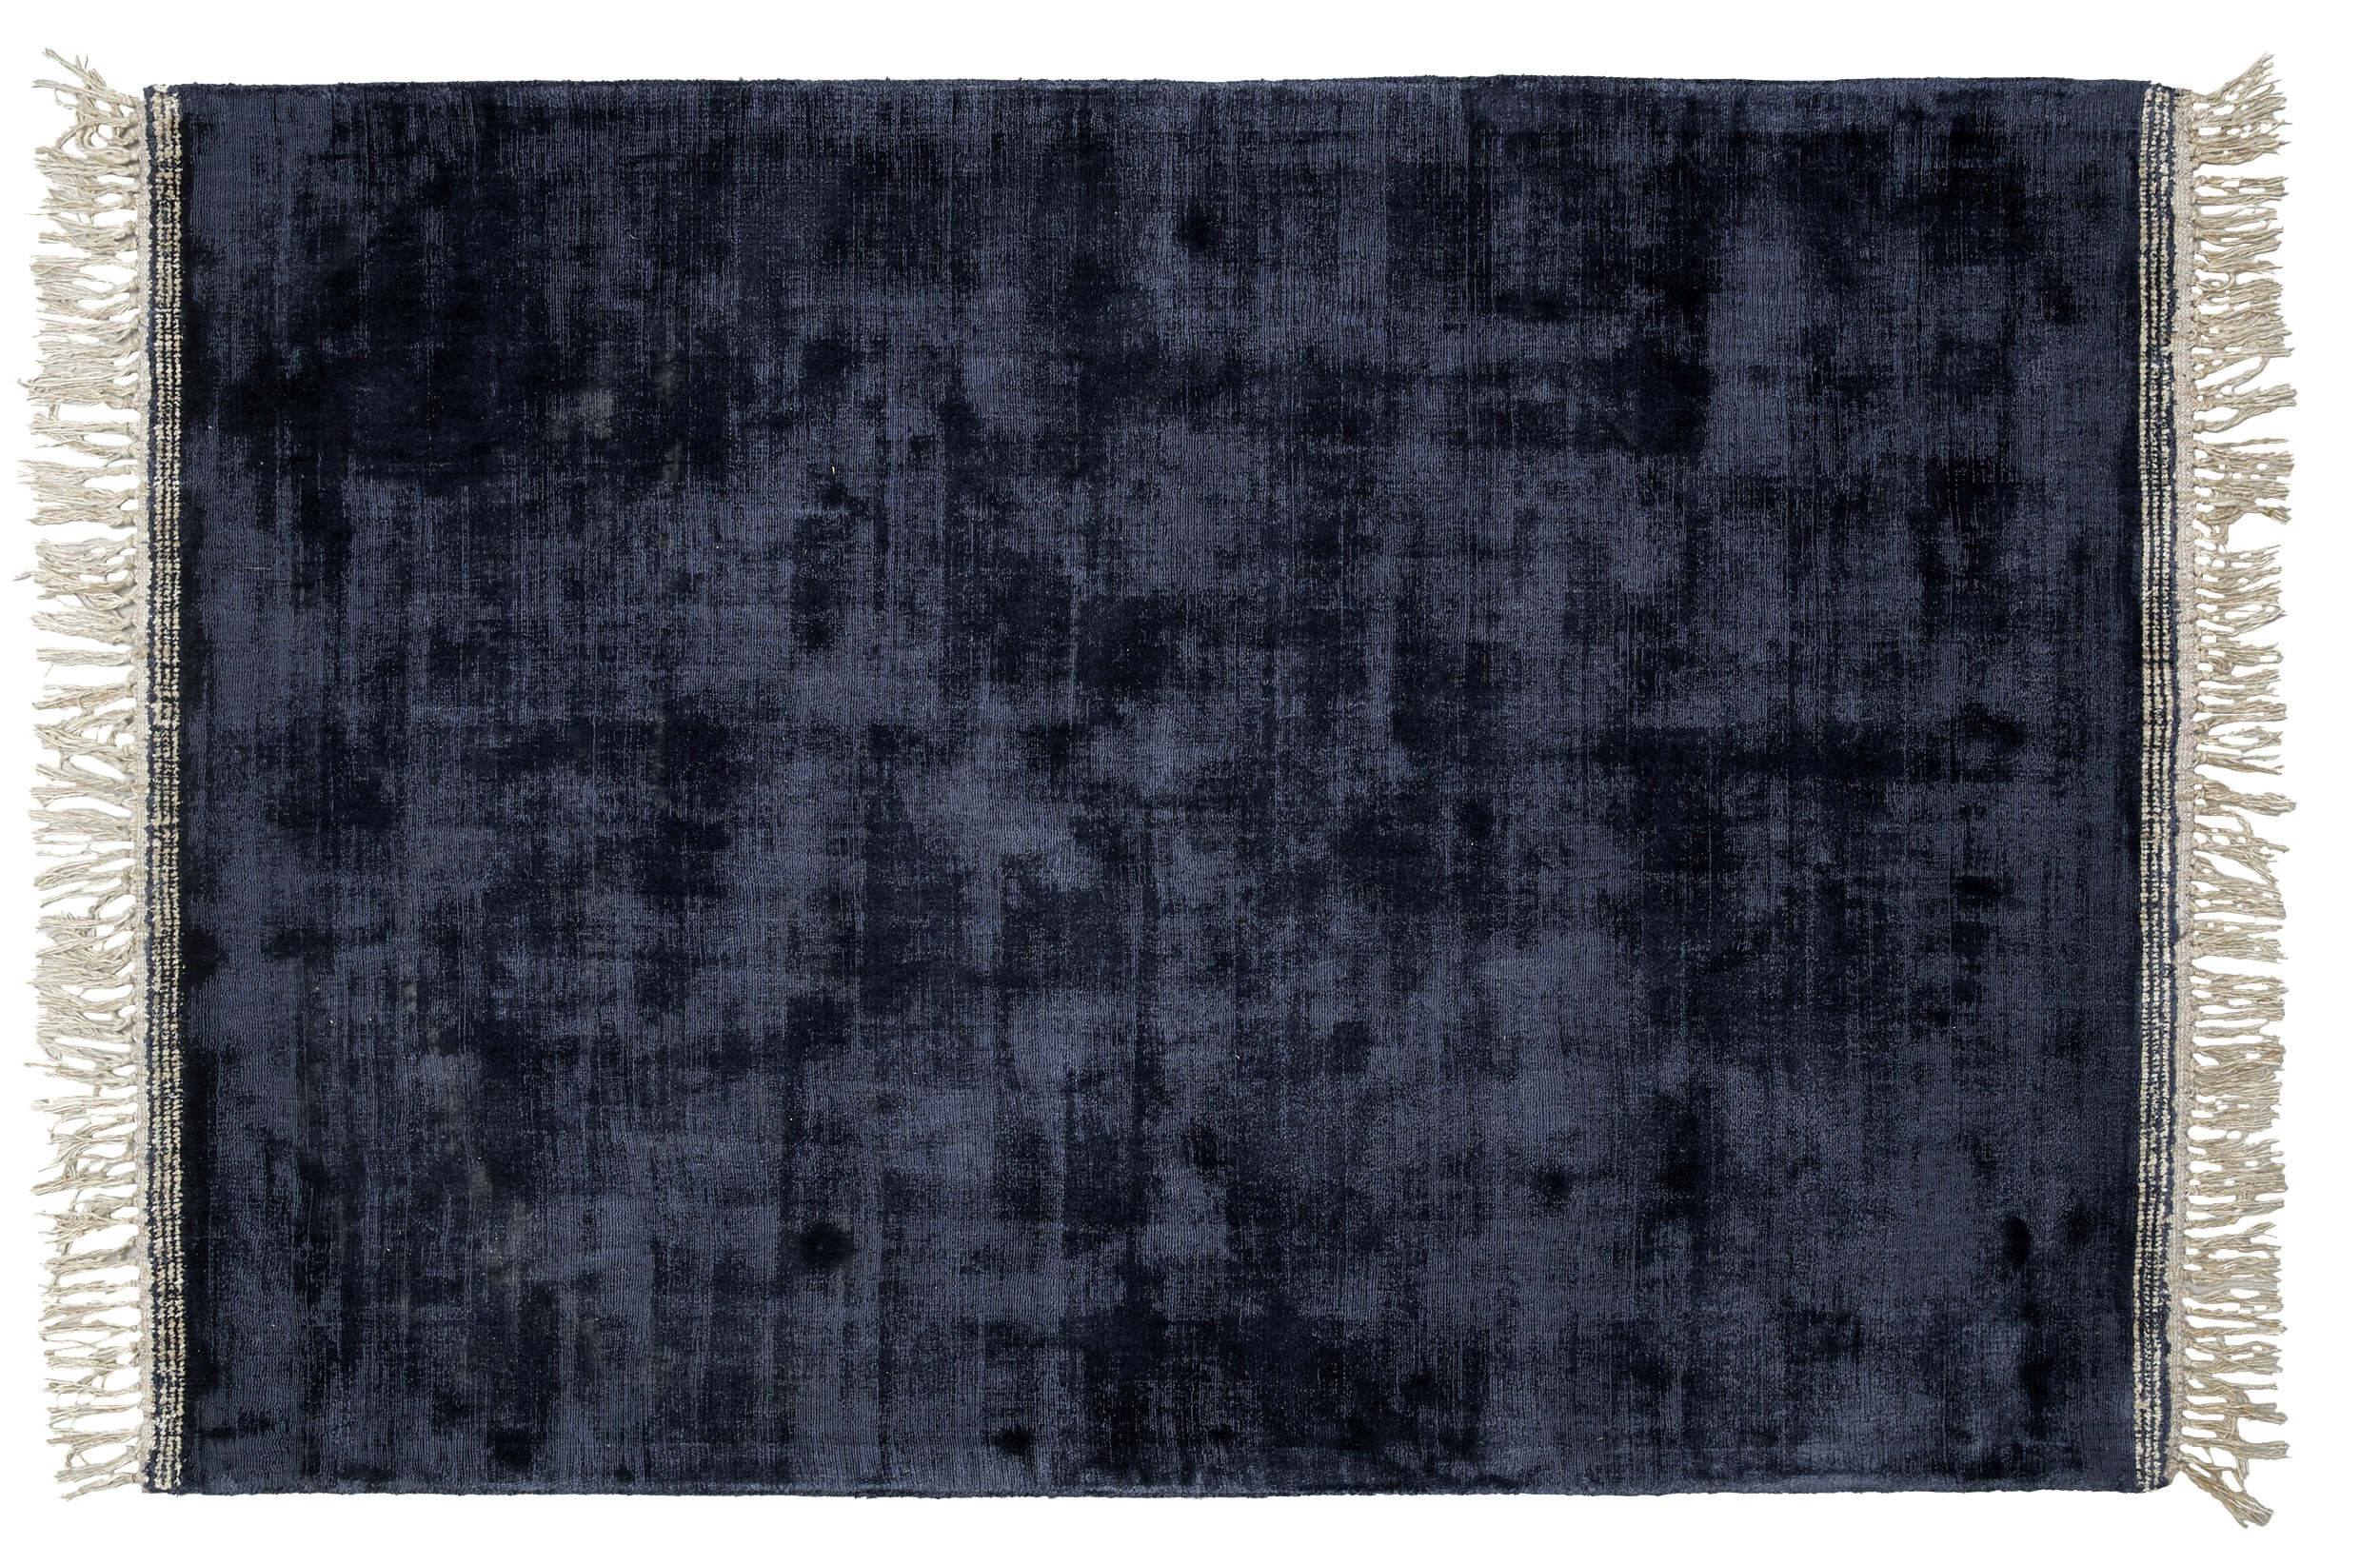 Topaz Tuftad matta 200 x 300 cm - Mörkblå ull/viskos, stickmönster/prickmönster och off-white fransar